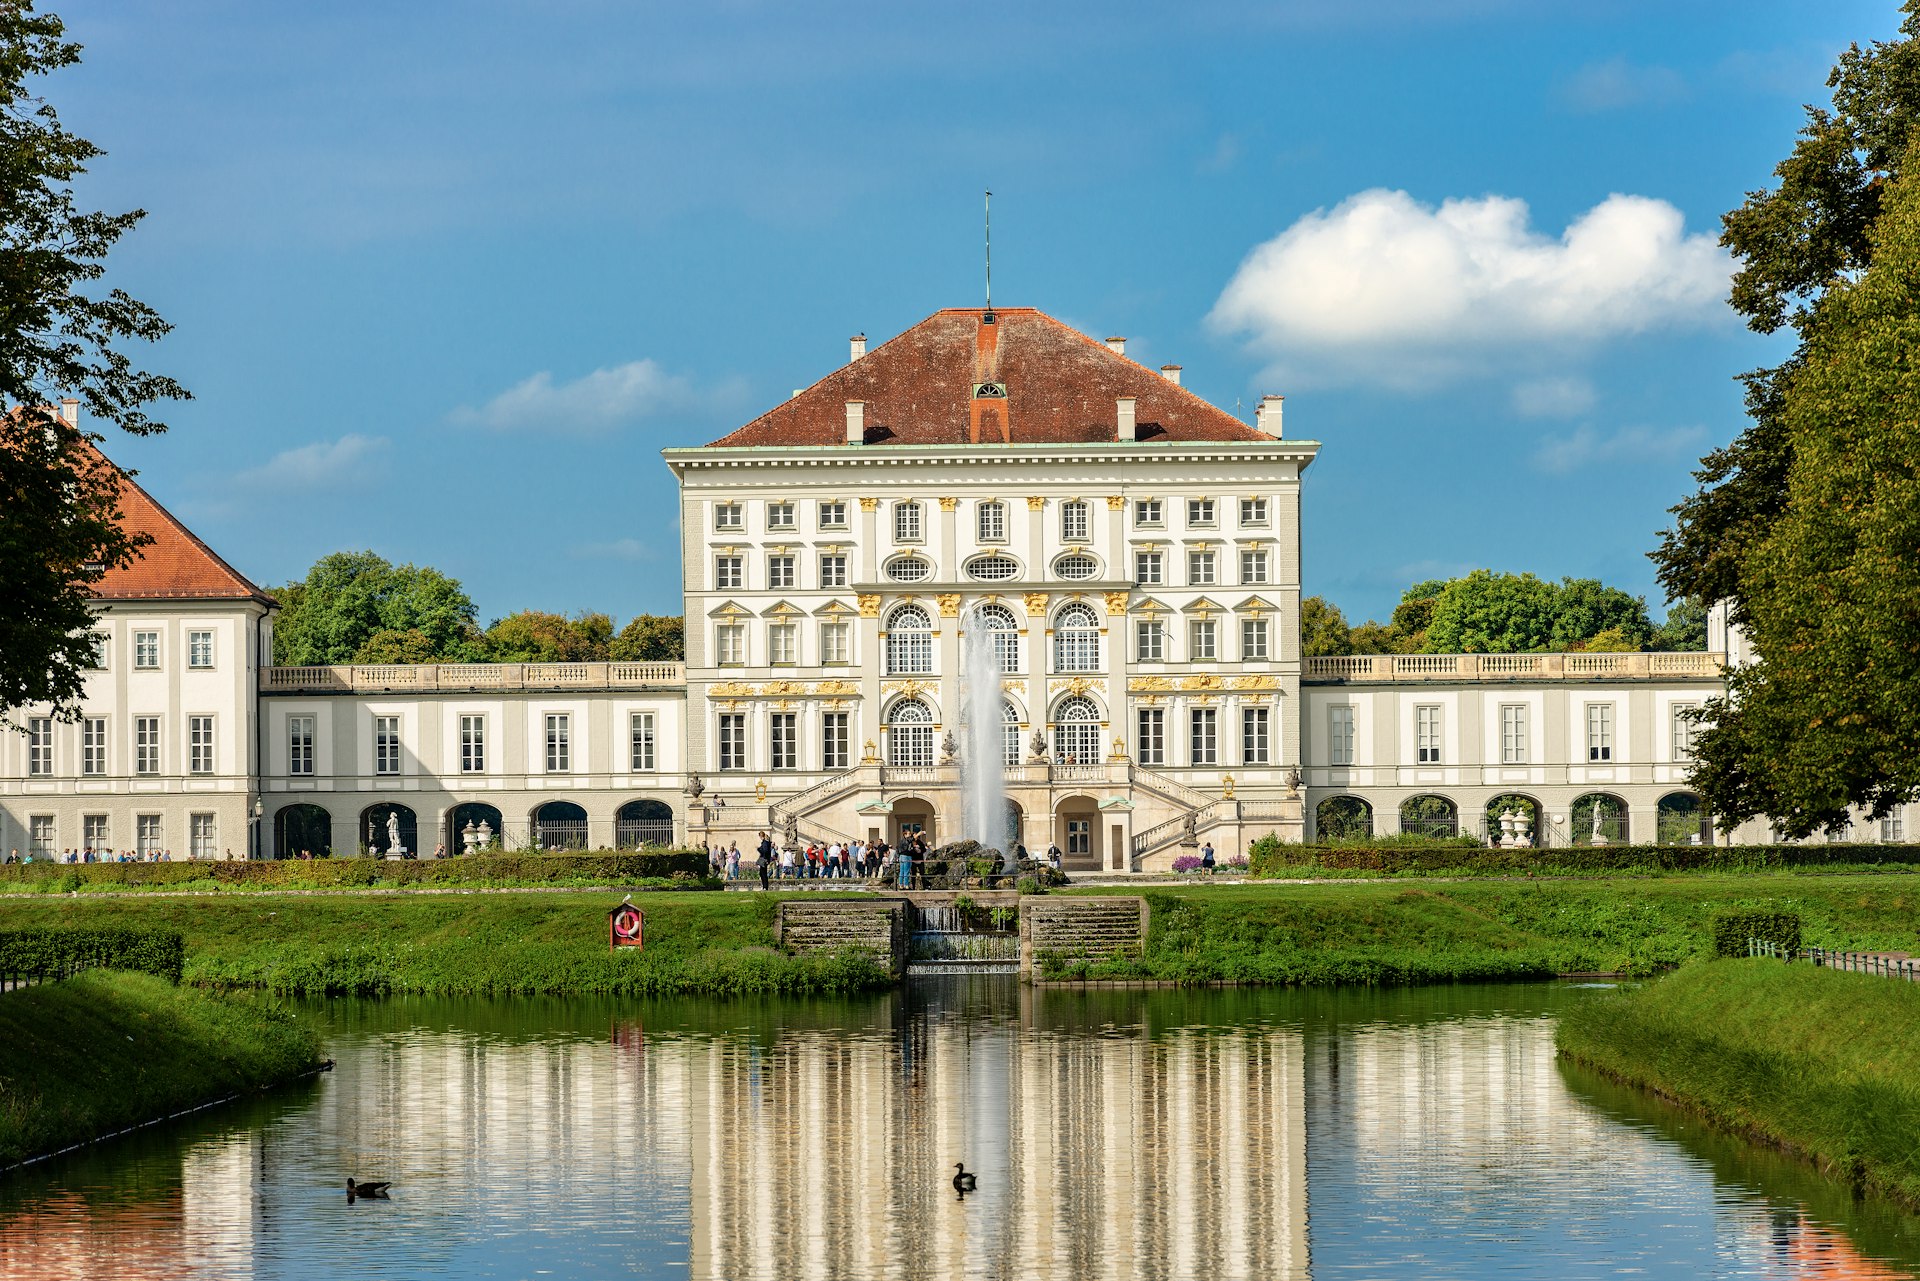 Het terrein van Schloss Nymphenburg weerspiegeld in de rivier